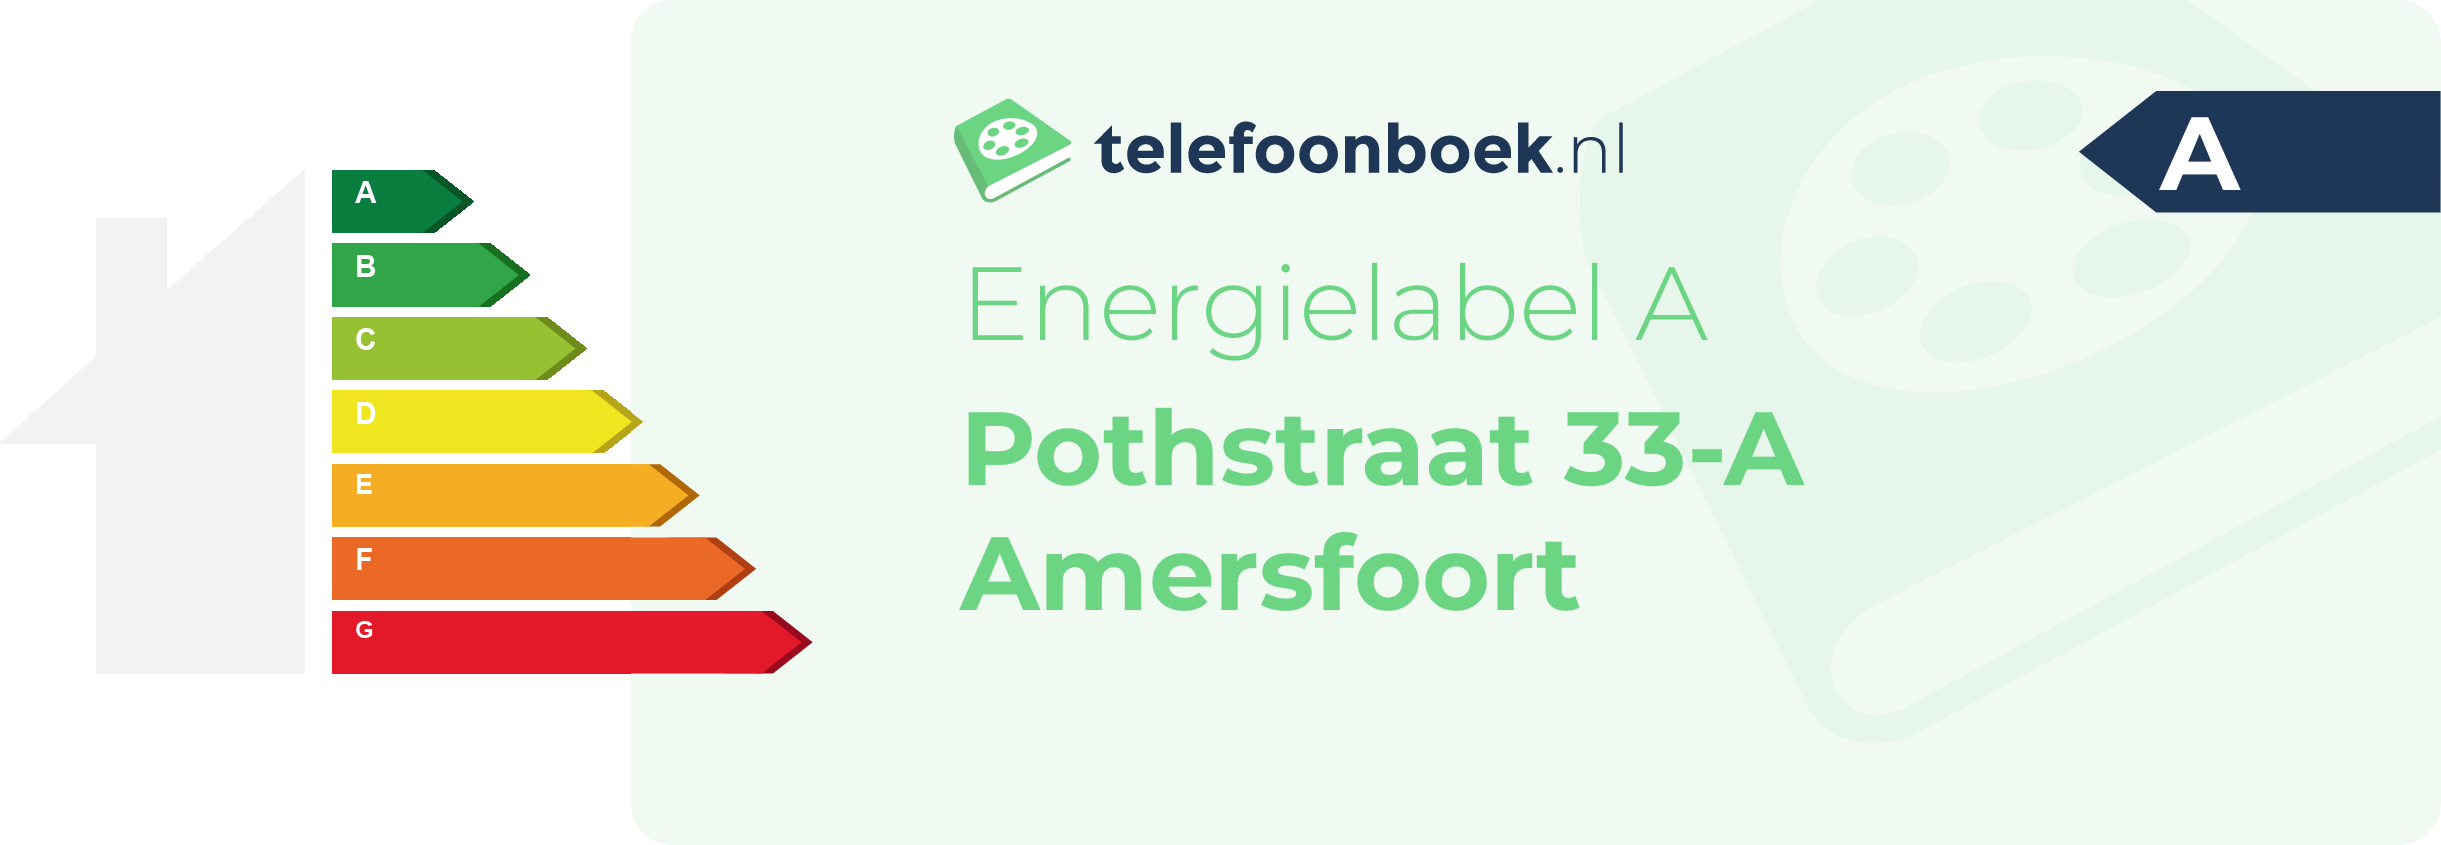 Energielabel Pothstraat 33-A Amersfoort